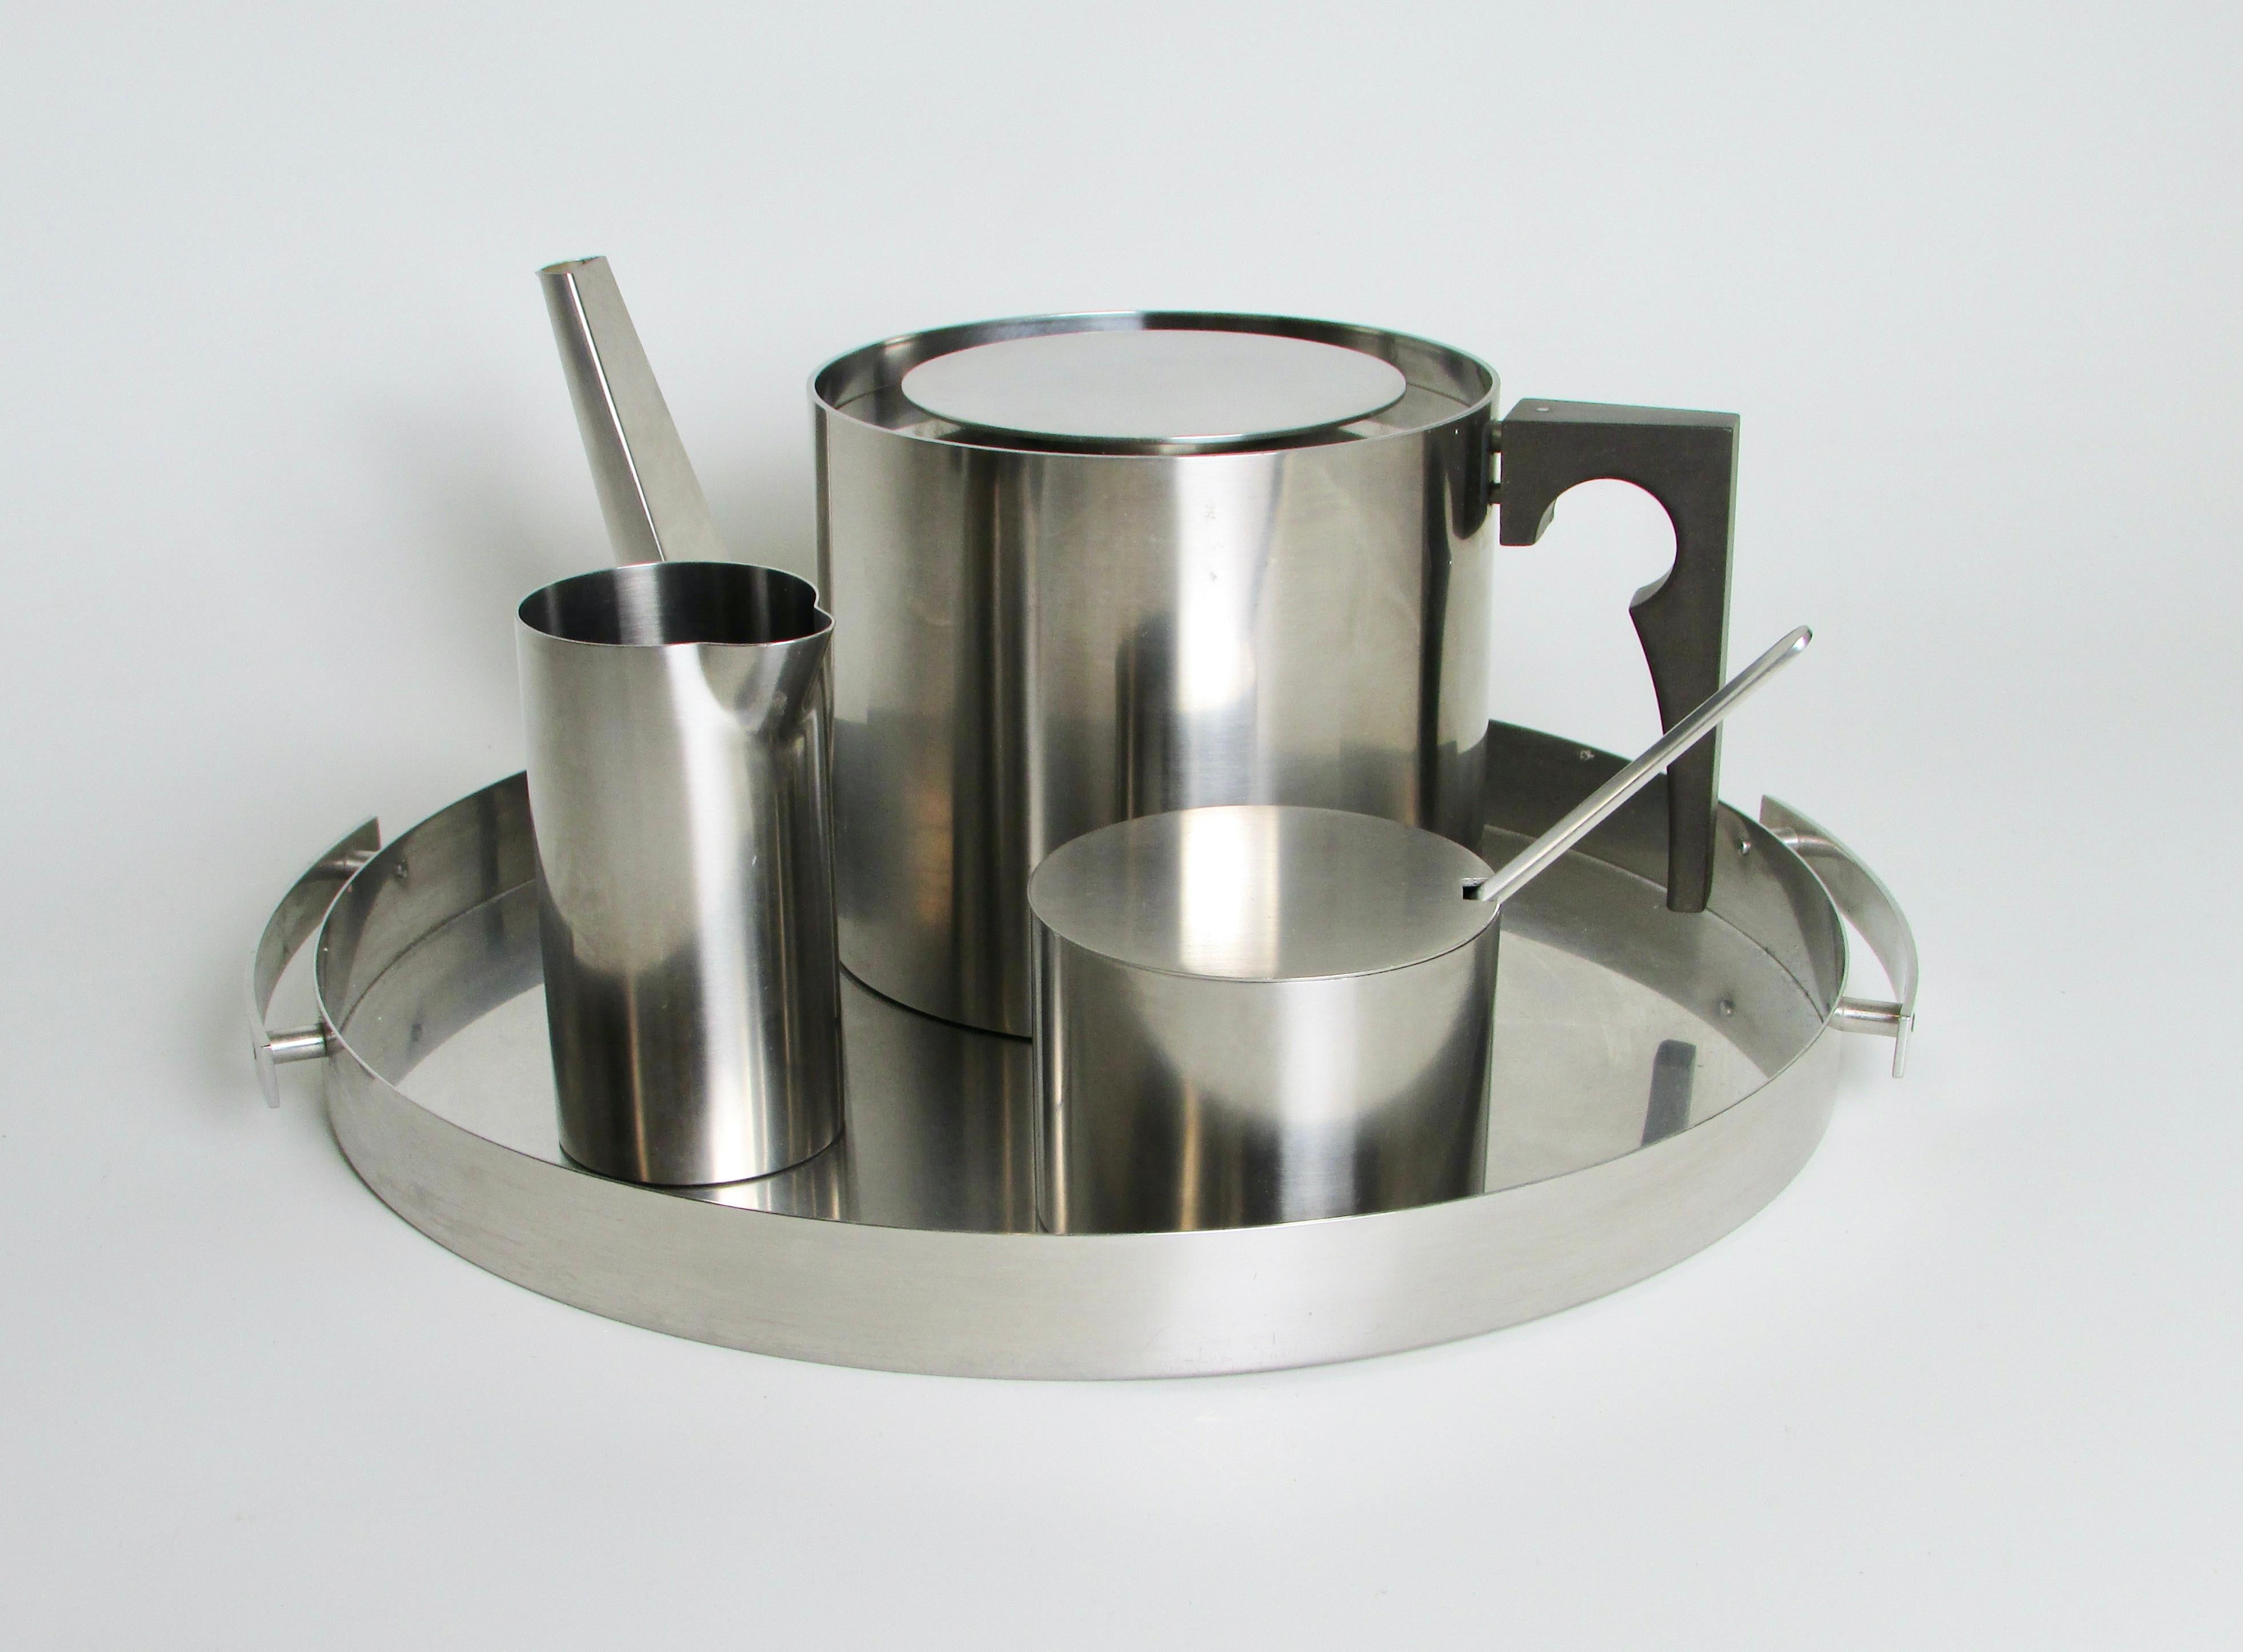 Fünf Stück des formschönen und ergonomischen Stelton Teeservices aus Edelstahl. Diese sind aus der von Arne Jacobsen entworfenen Zylinderlinie. Jedes Stück besticht durch seine Schlichtheit und sein Design. Von der Teekanne ohne Ausguss und kleiner